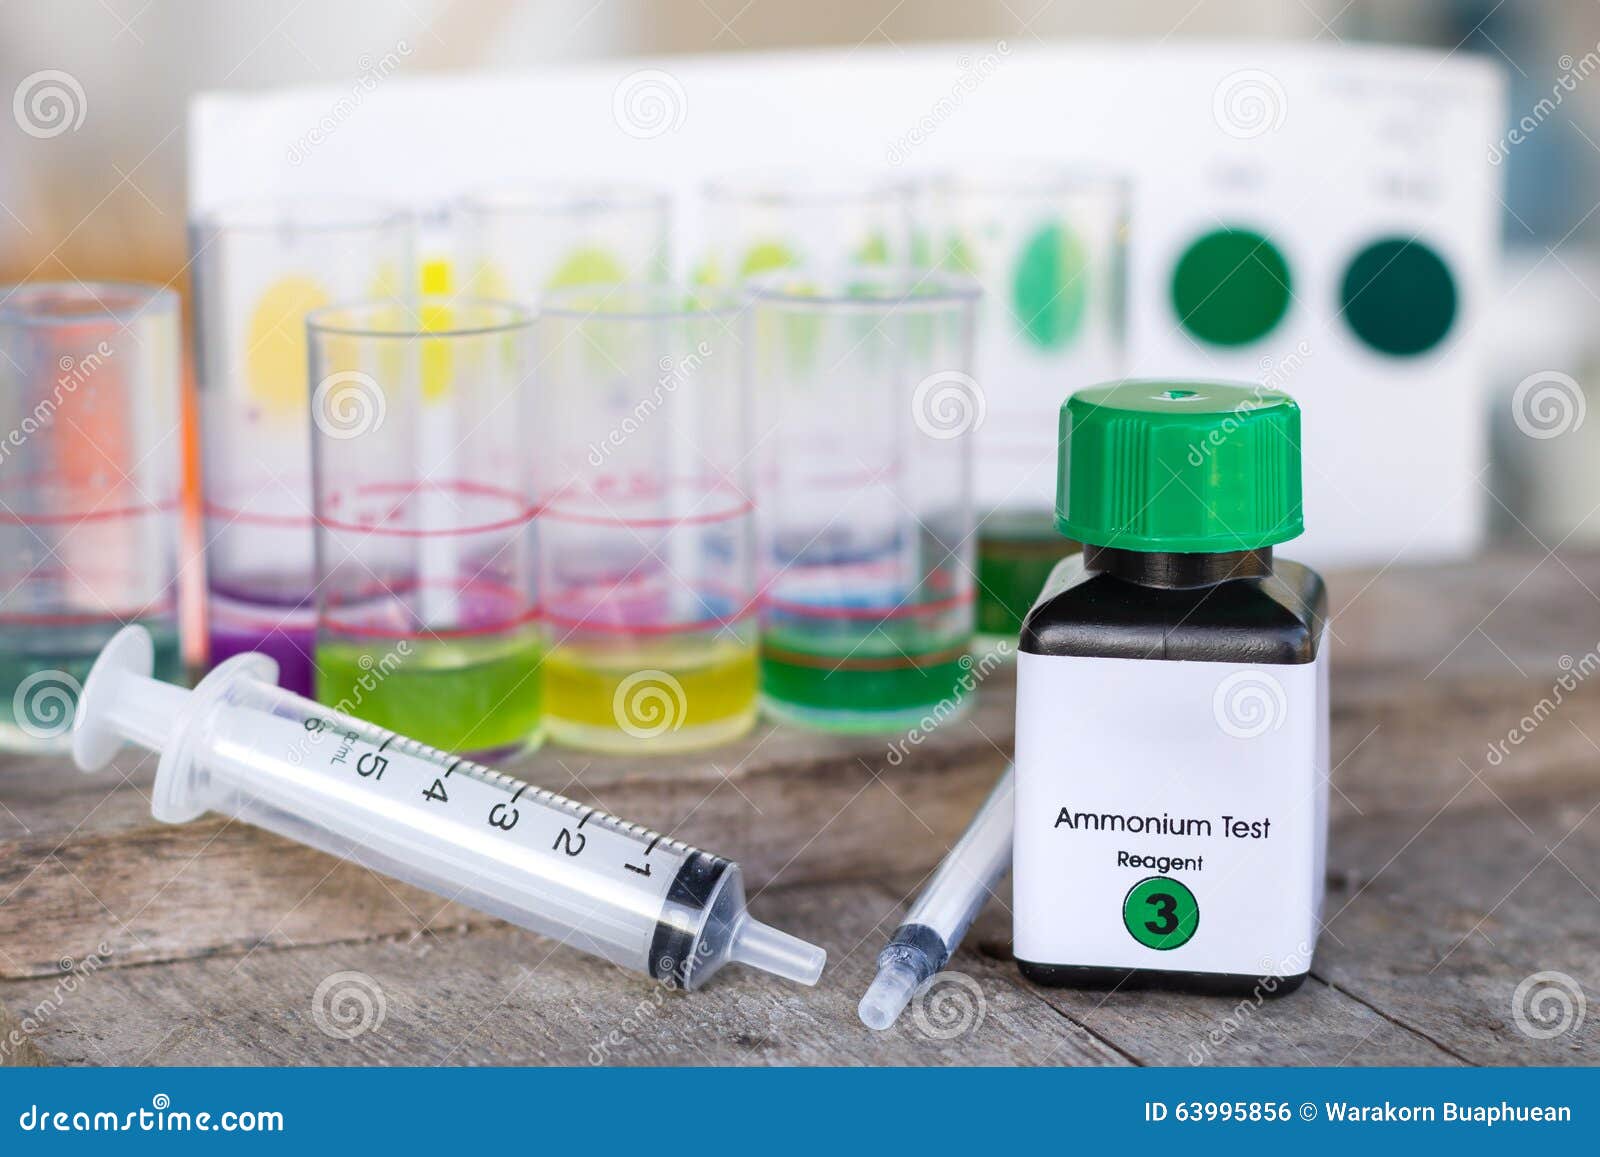 Ammonia Test Kit With Syringe Stock Photo Image Of Value Bottle